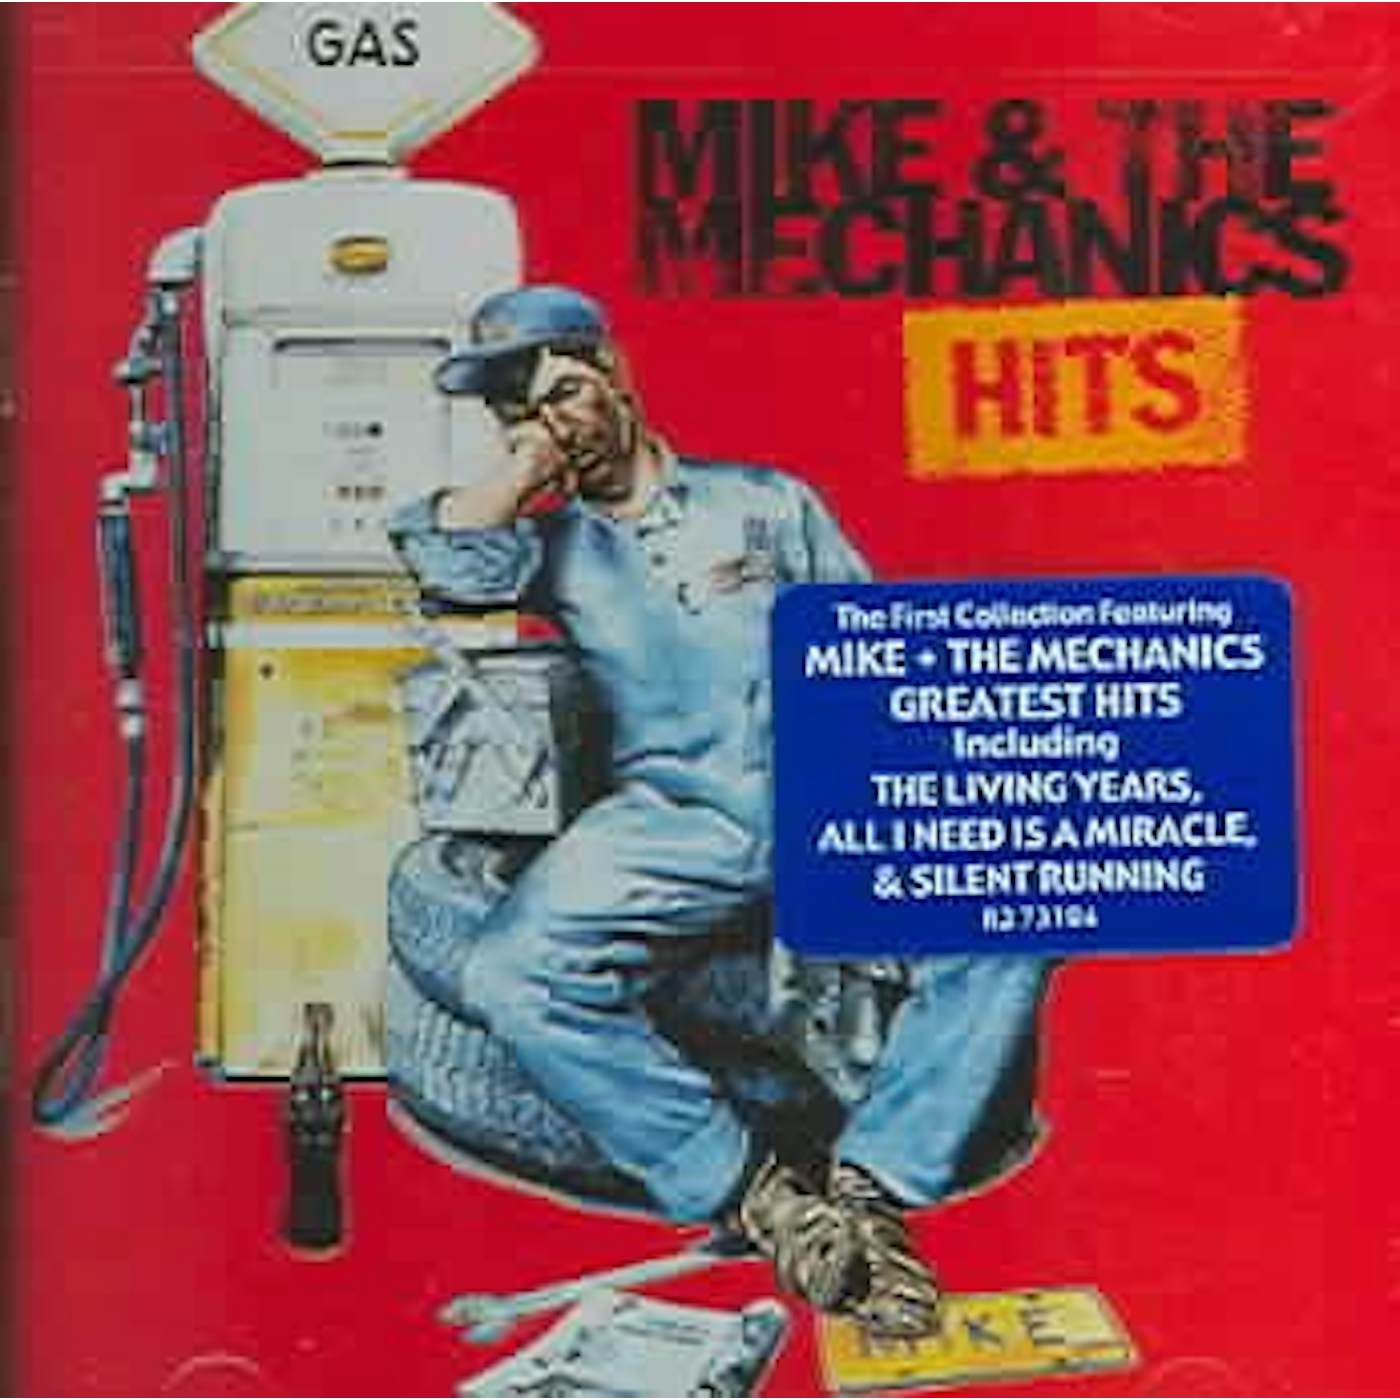 Mike + The Mechanics Hits CD